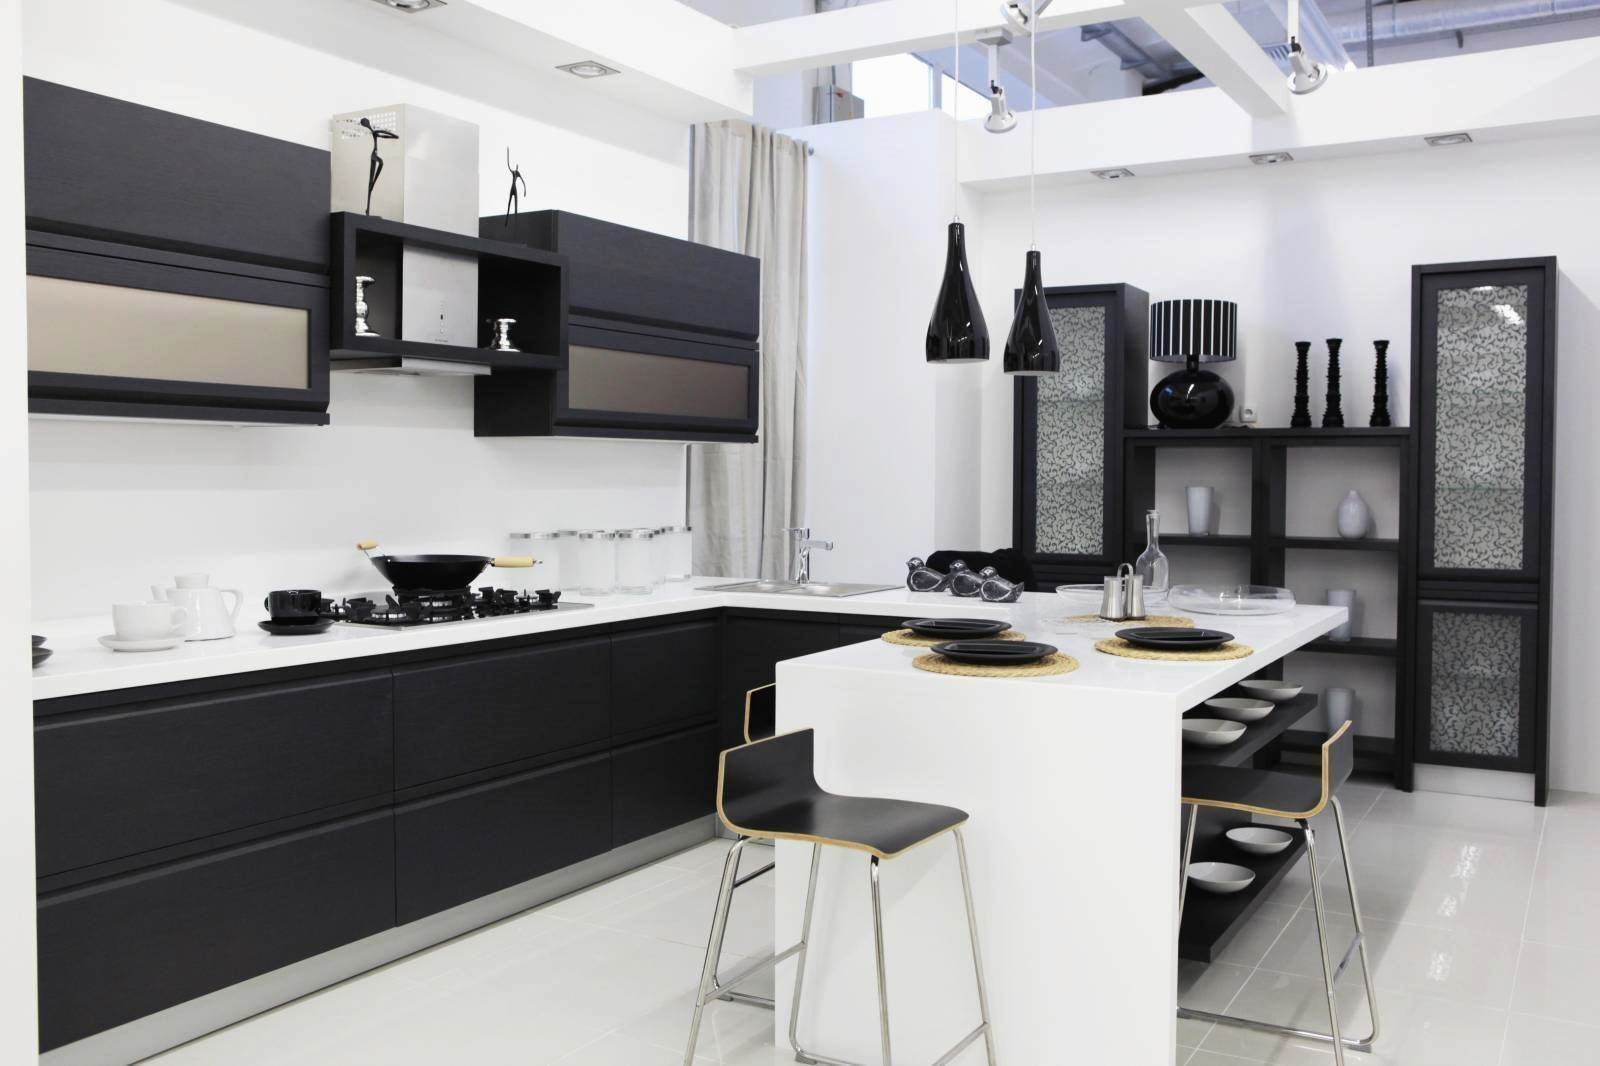 Кухня черный верх. Бело черная кухня. Черный кухонный гарнитур. Черно белая стильная кухня. Черно-белые кухни в интерьере.